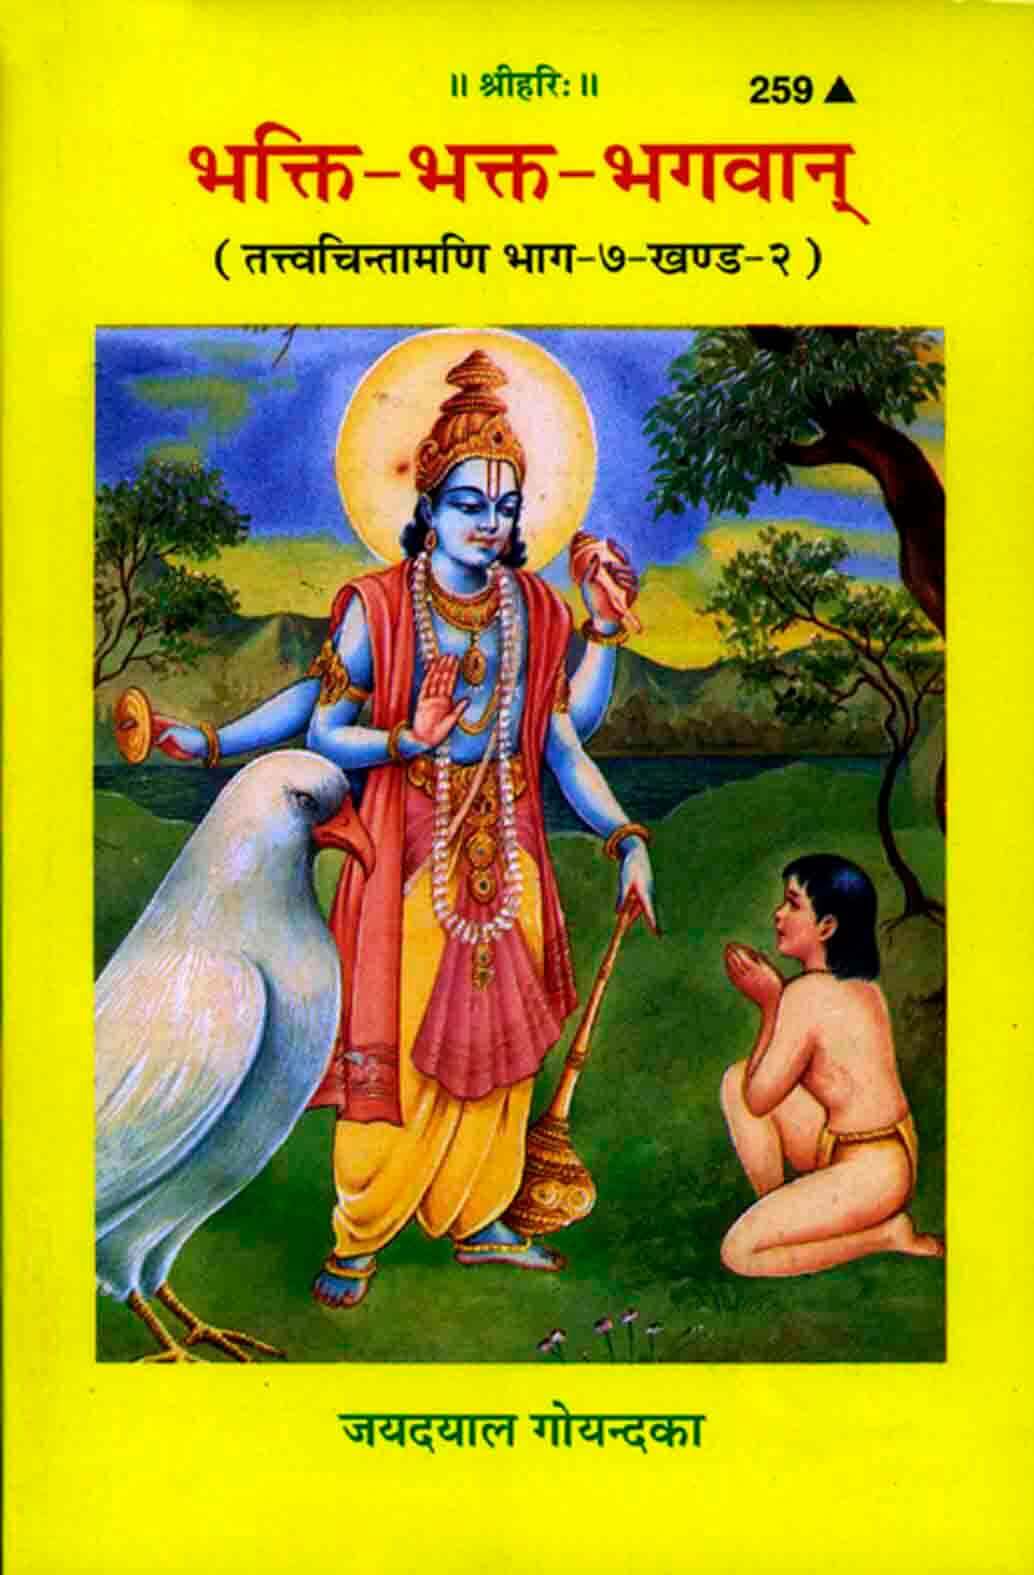 SANATAN  Bhakti-Bhakta-Bhagwan (Part-7/2) by Gita Press